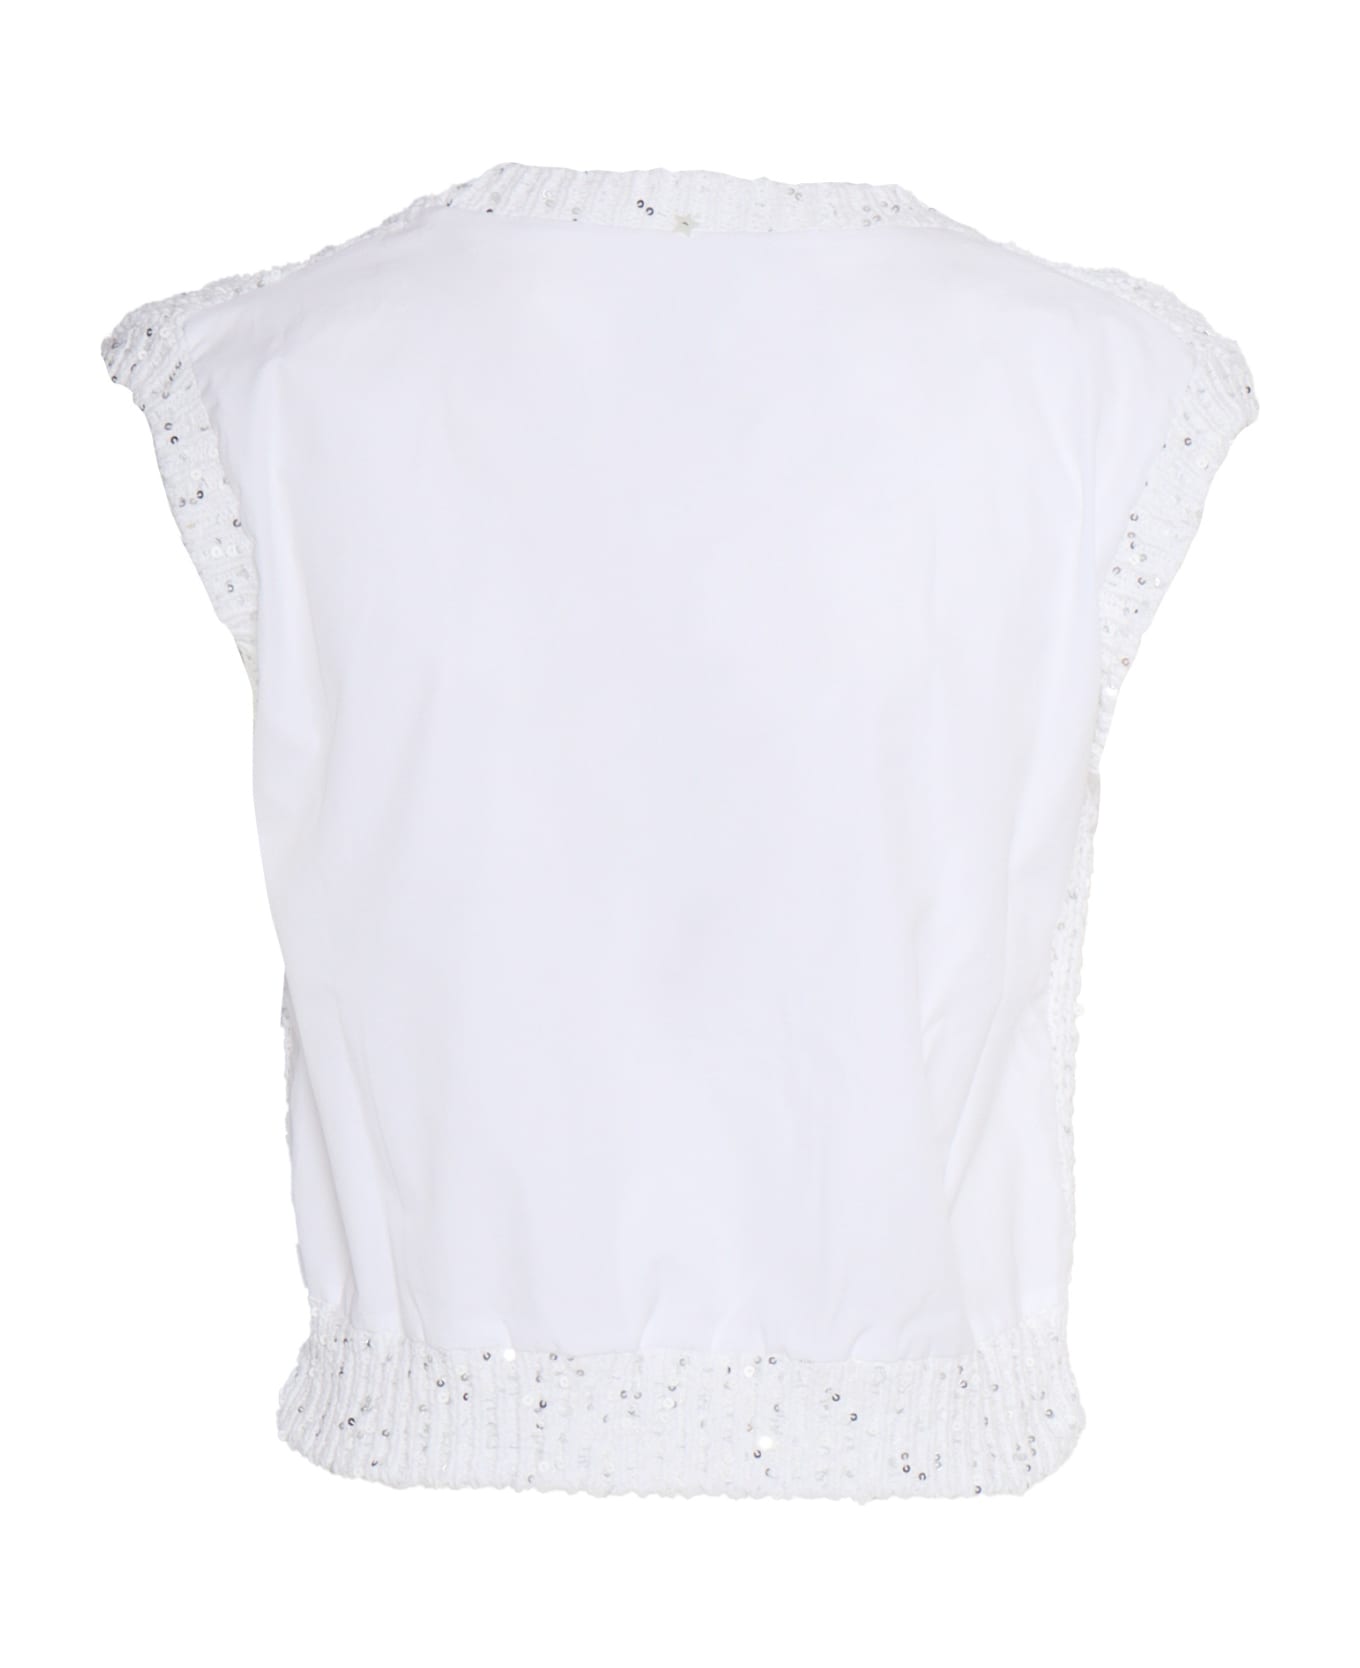 Lorena Antoniazzi White Knit Top - WHITE